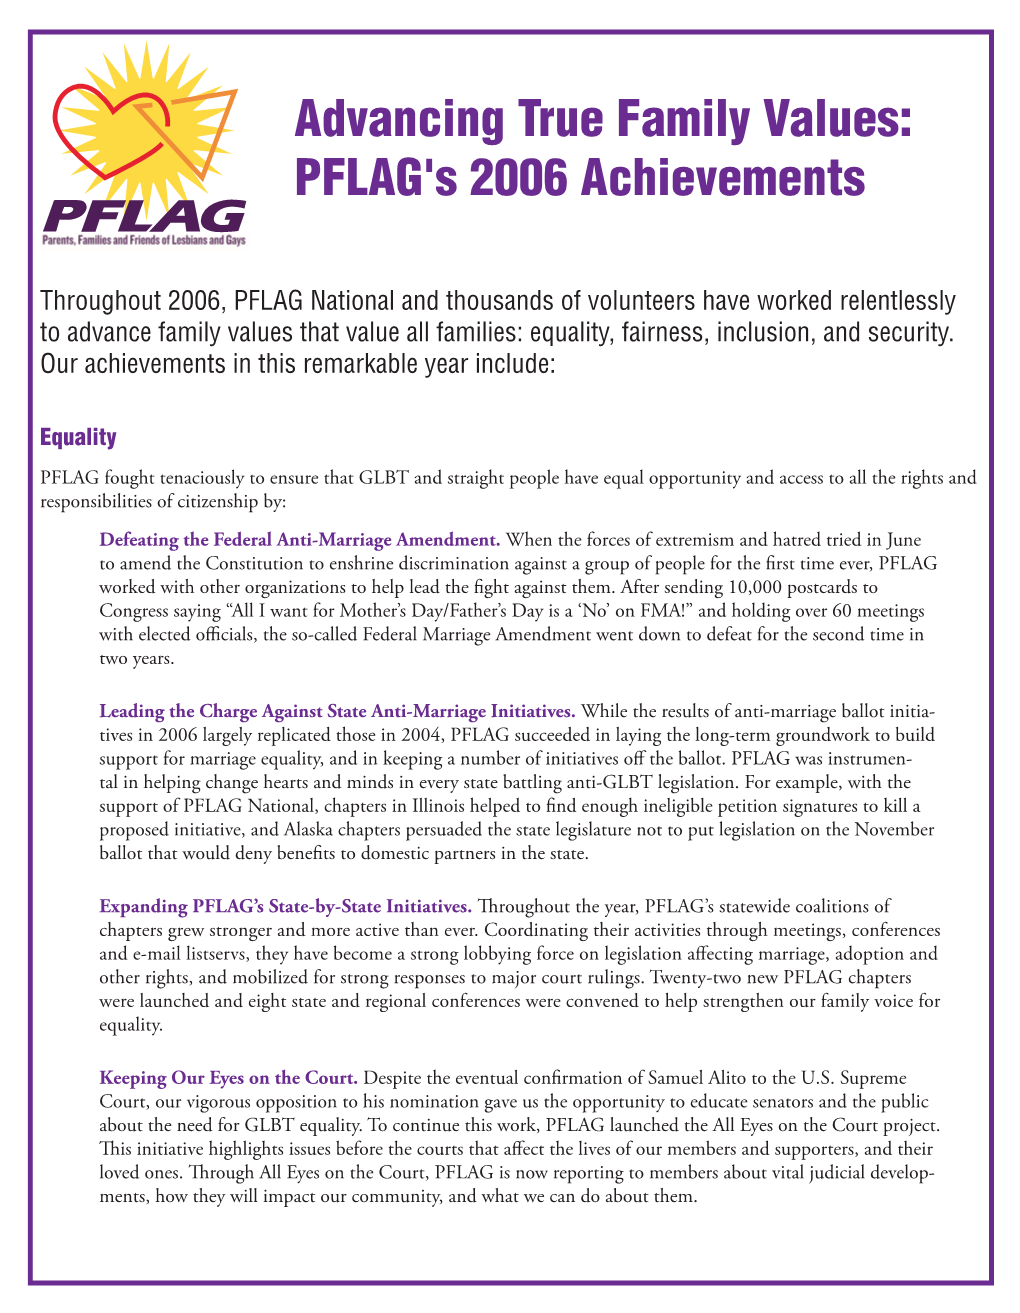 PFLAG's 2006 Achievements